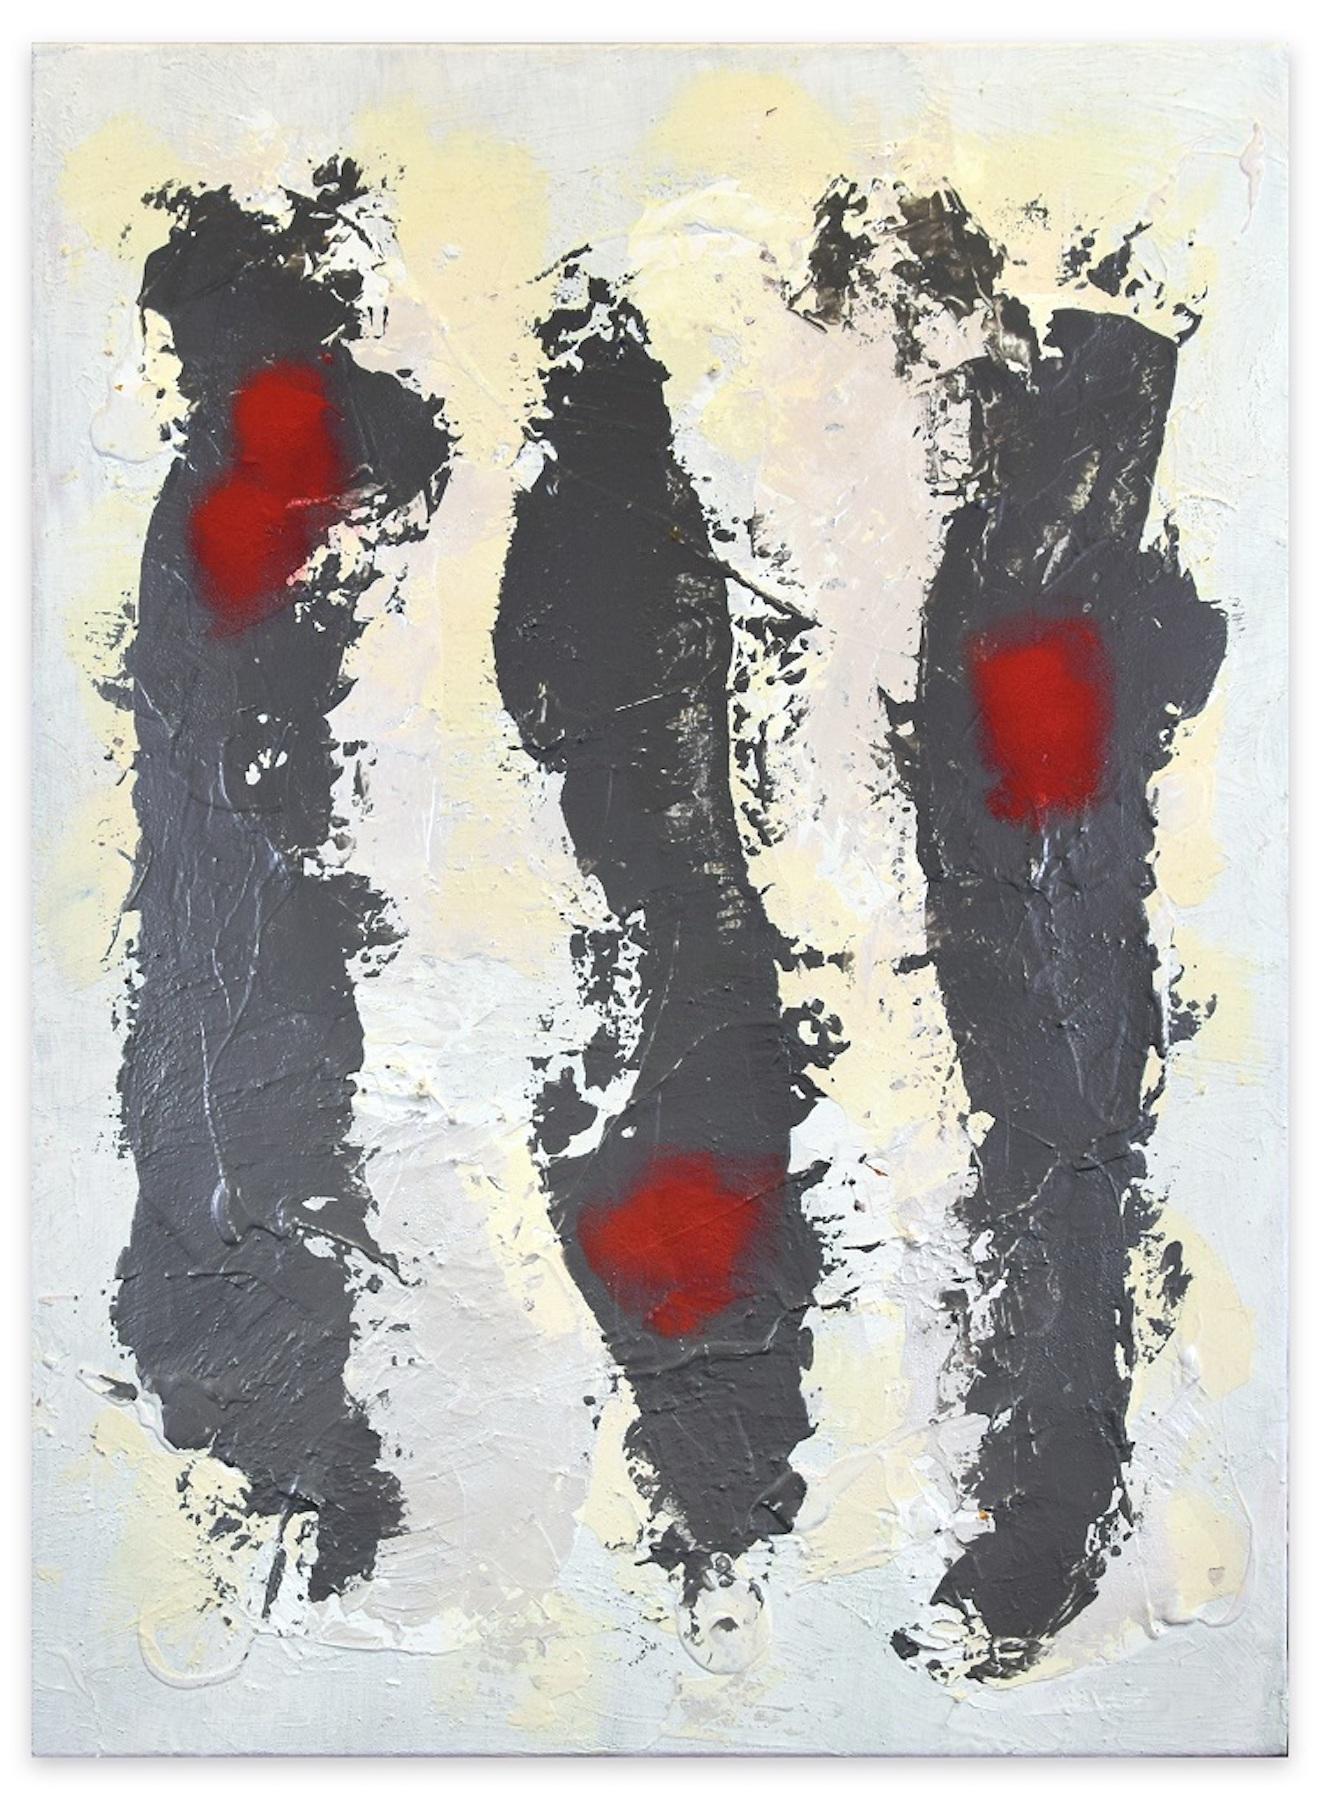 Trace est une peinture originale mixte sur panneau réalisée par l'artiste italien Marco MarCo en 1980.

Titre original : Traccia

Le titre, la signature, la date et les monogrammes sont inscrits par l'artiste au marqueur noir au dos de la toile.